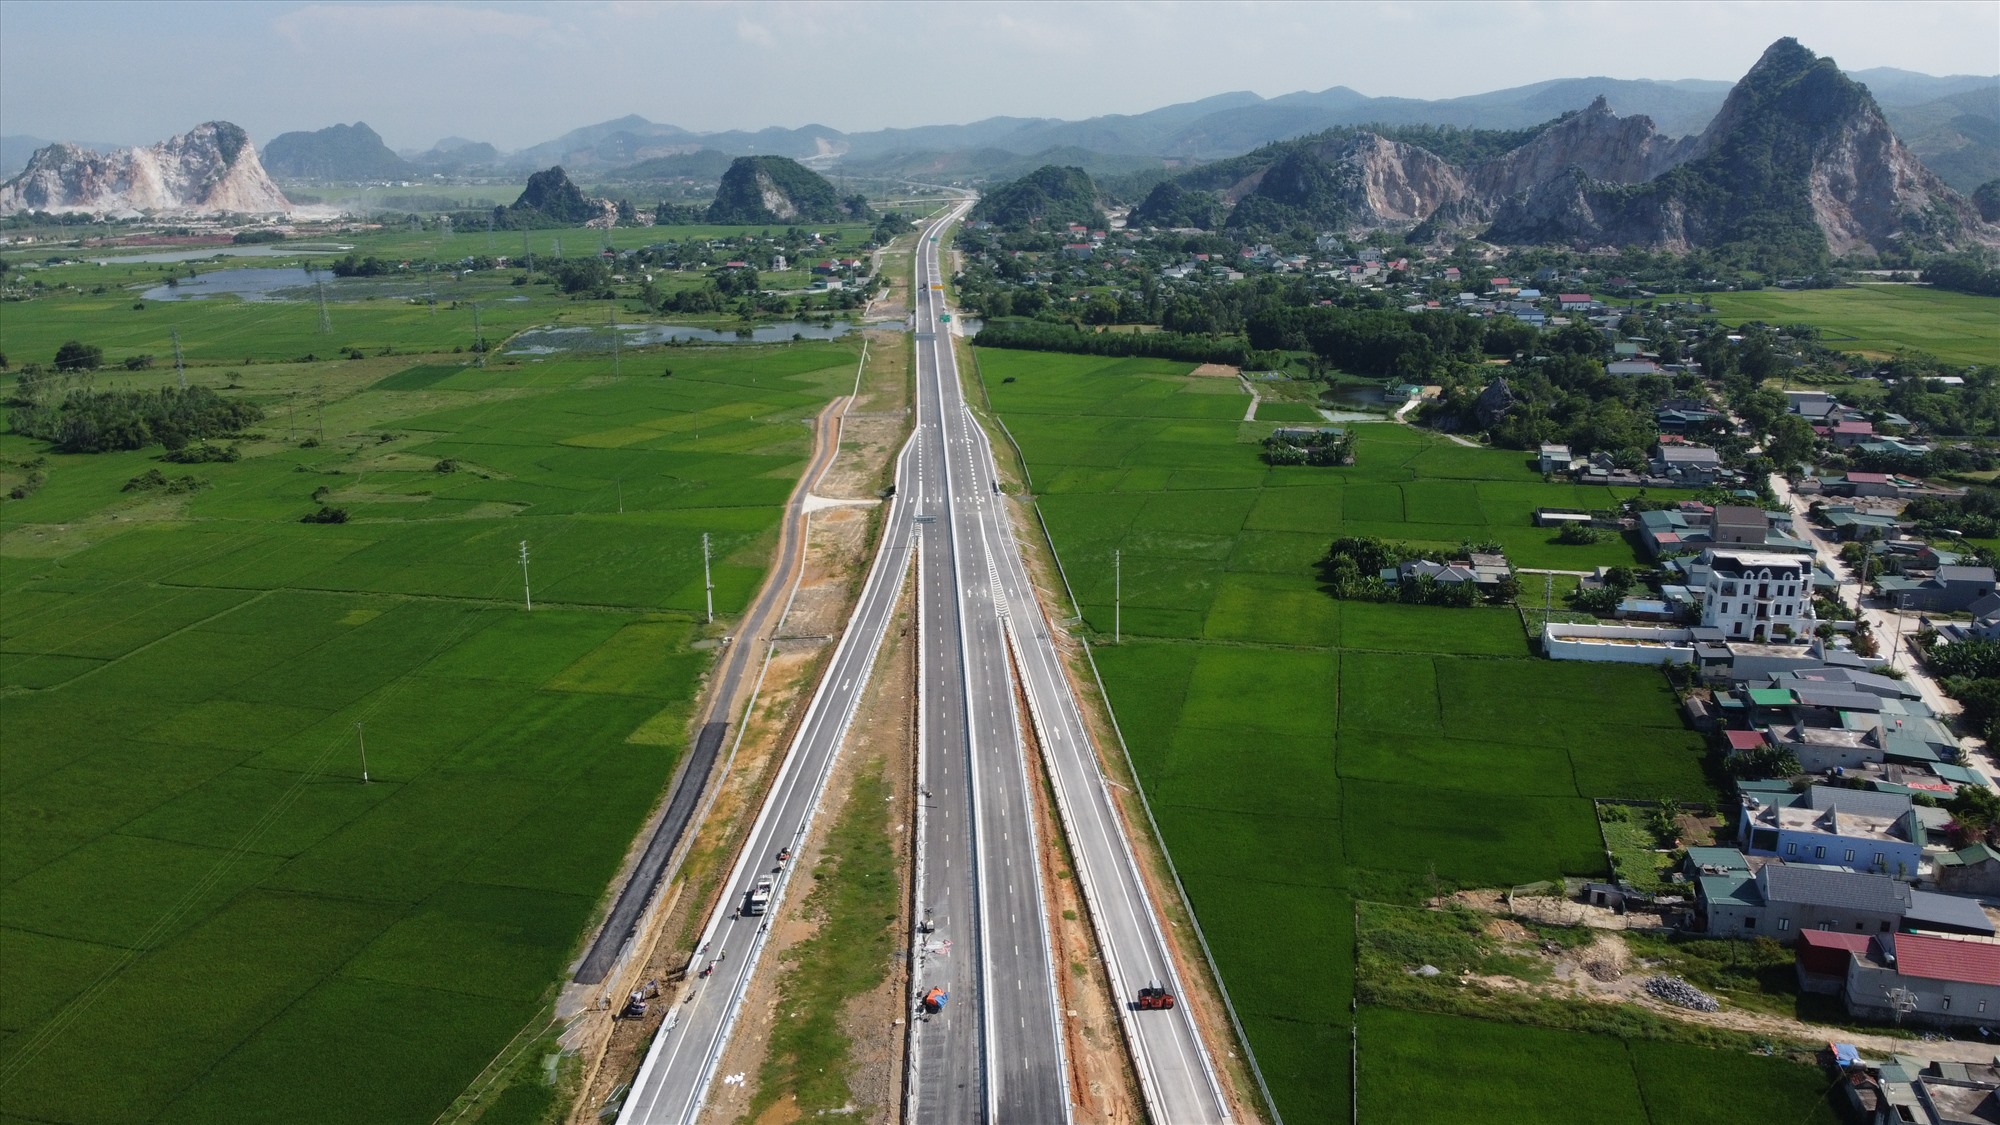 Tuyến cao tốc Nghi Sơn - Diễn Châu sau khi hoàn thành sẽ kết nối với tuyến cao tốc Mai Sơn - Quốc lộ 45, qua đó giúp người dân rút ngắn thời gian di chuyển từ Hà Nội về Nghệ An. Ảnh: Quách Du